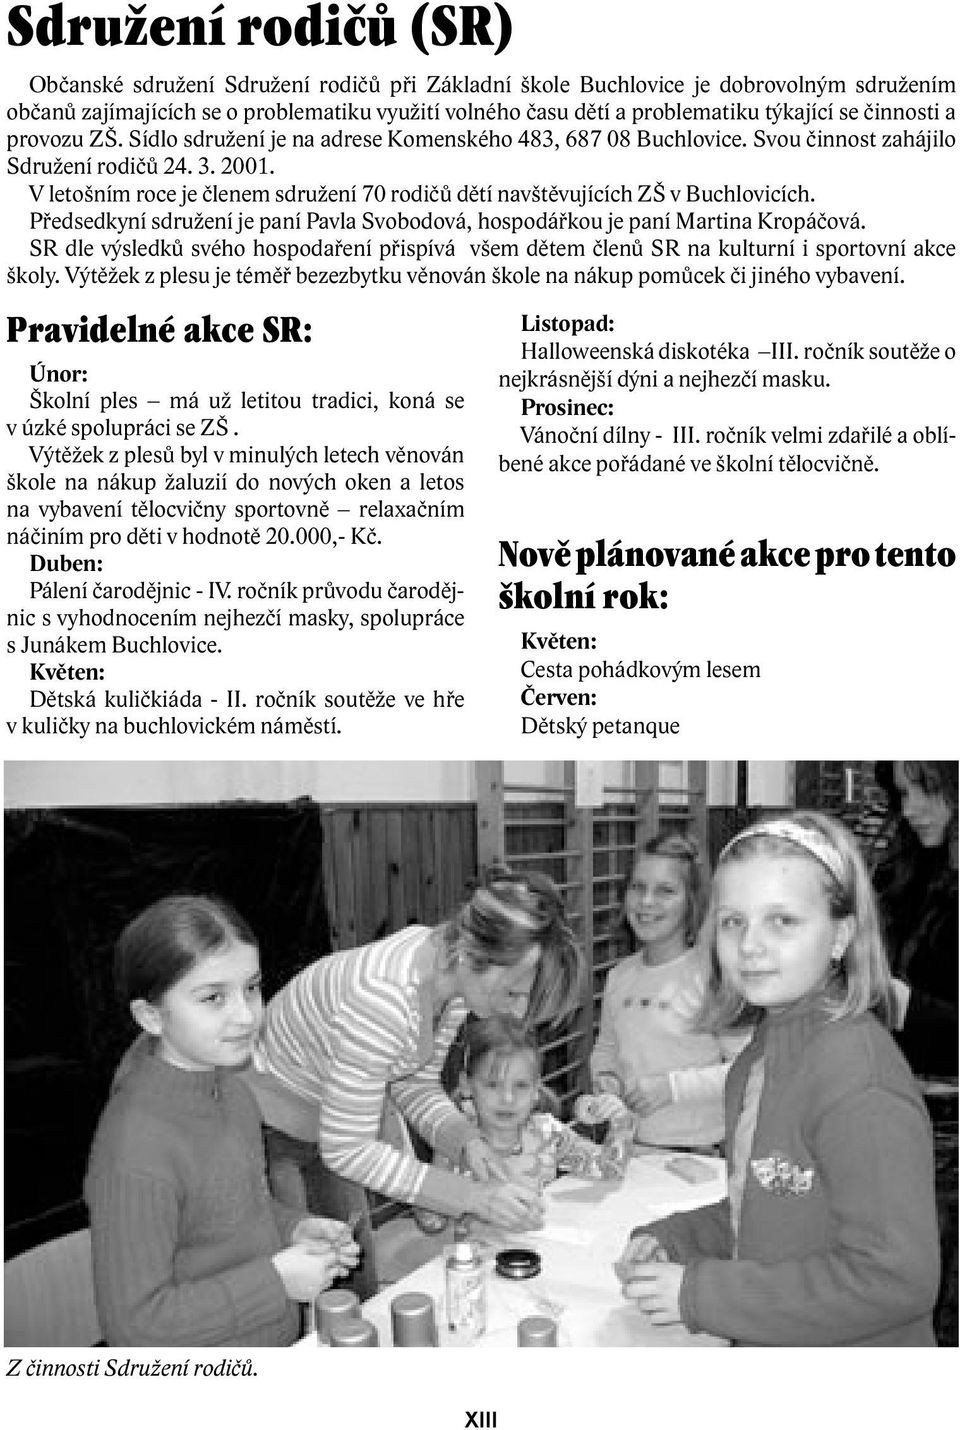 V letošním roce je členem sdružení 70 rodičů dětí navštěvujících ZŠ v Buchlovicích. Předsedkyní sdružení je paní Pavla Svobodová, hospodářkou je paní Martina Kropáčová.